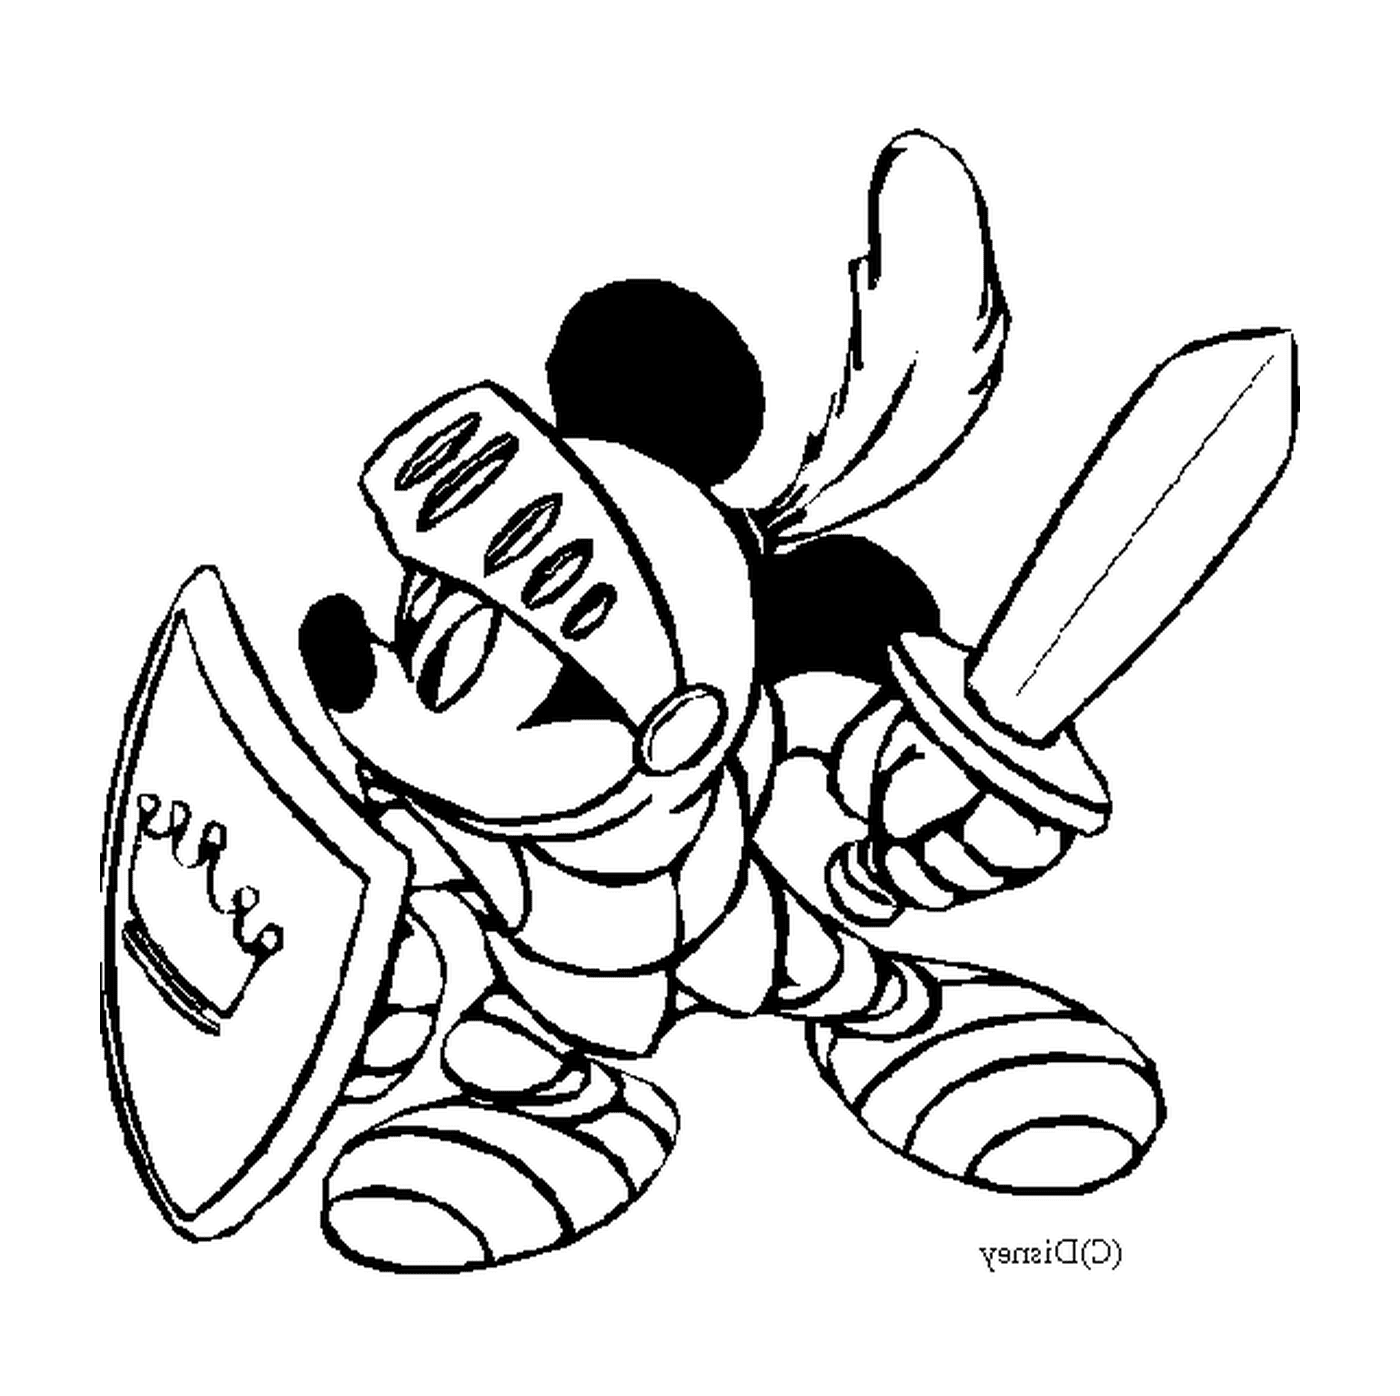  Mickey Mouse em armadura segurando uma espada 